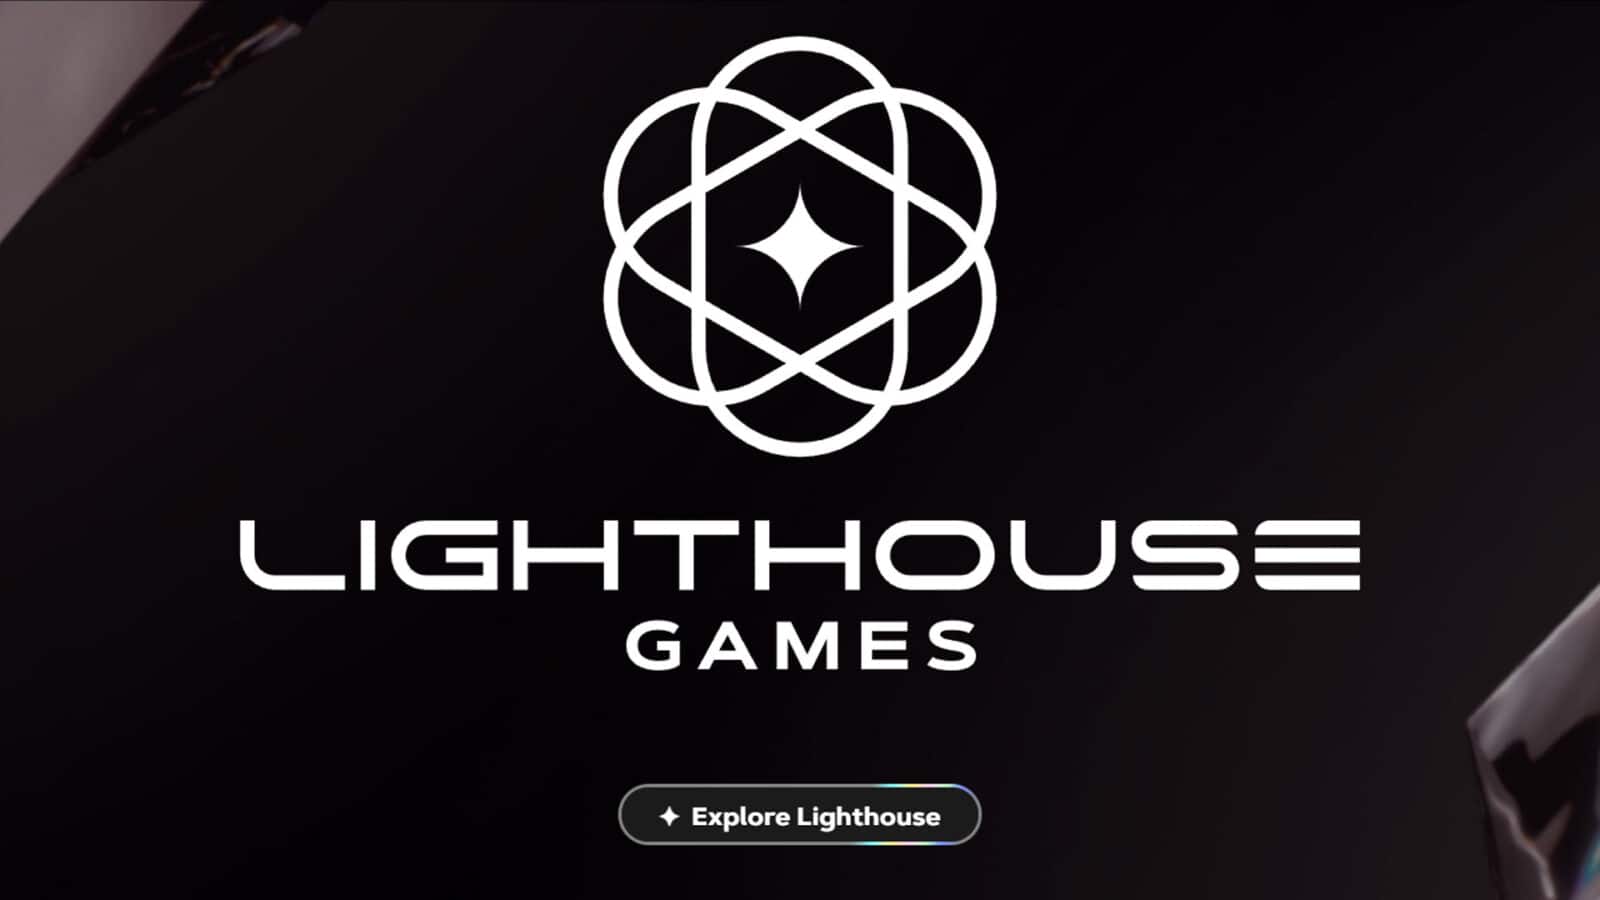 Lighthouse-Games-logo.jpg